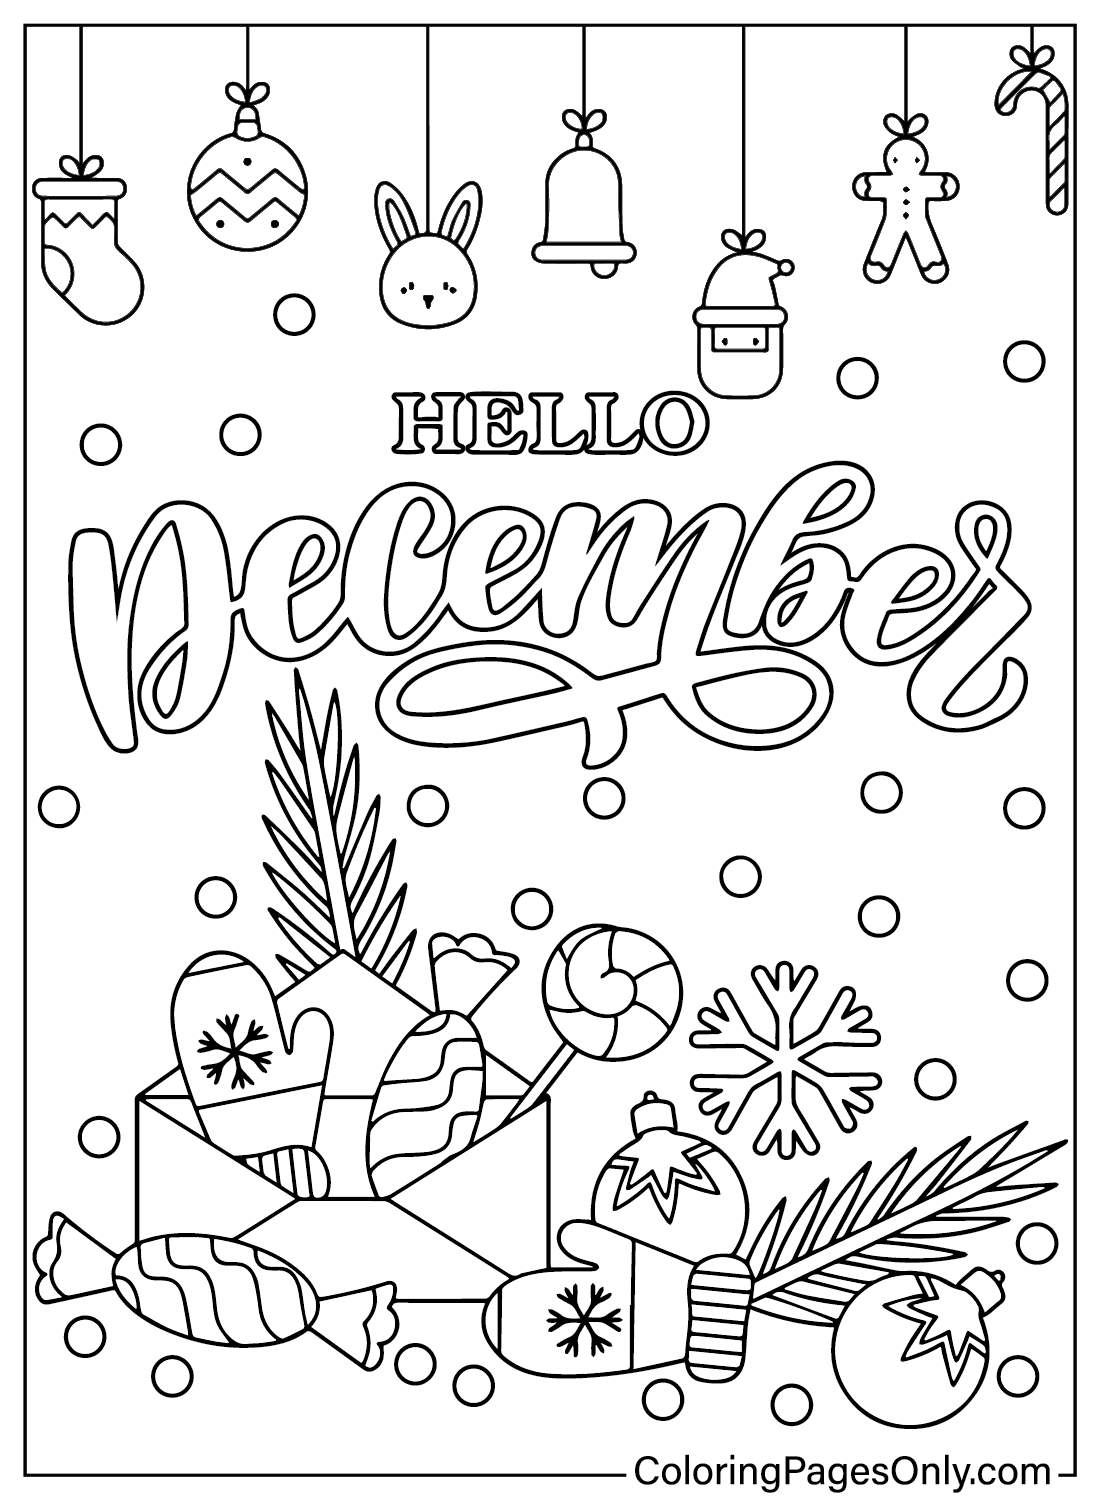 Página para colorear de diciembre imprimible de diciembre